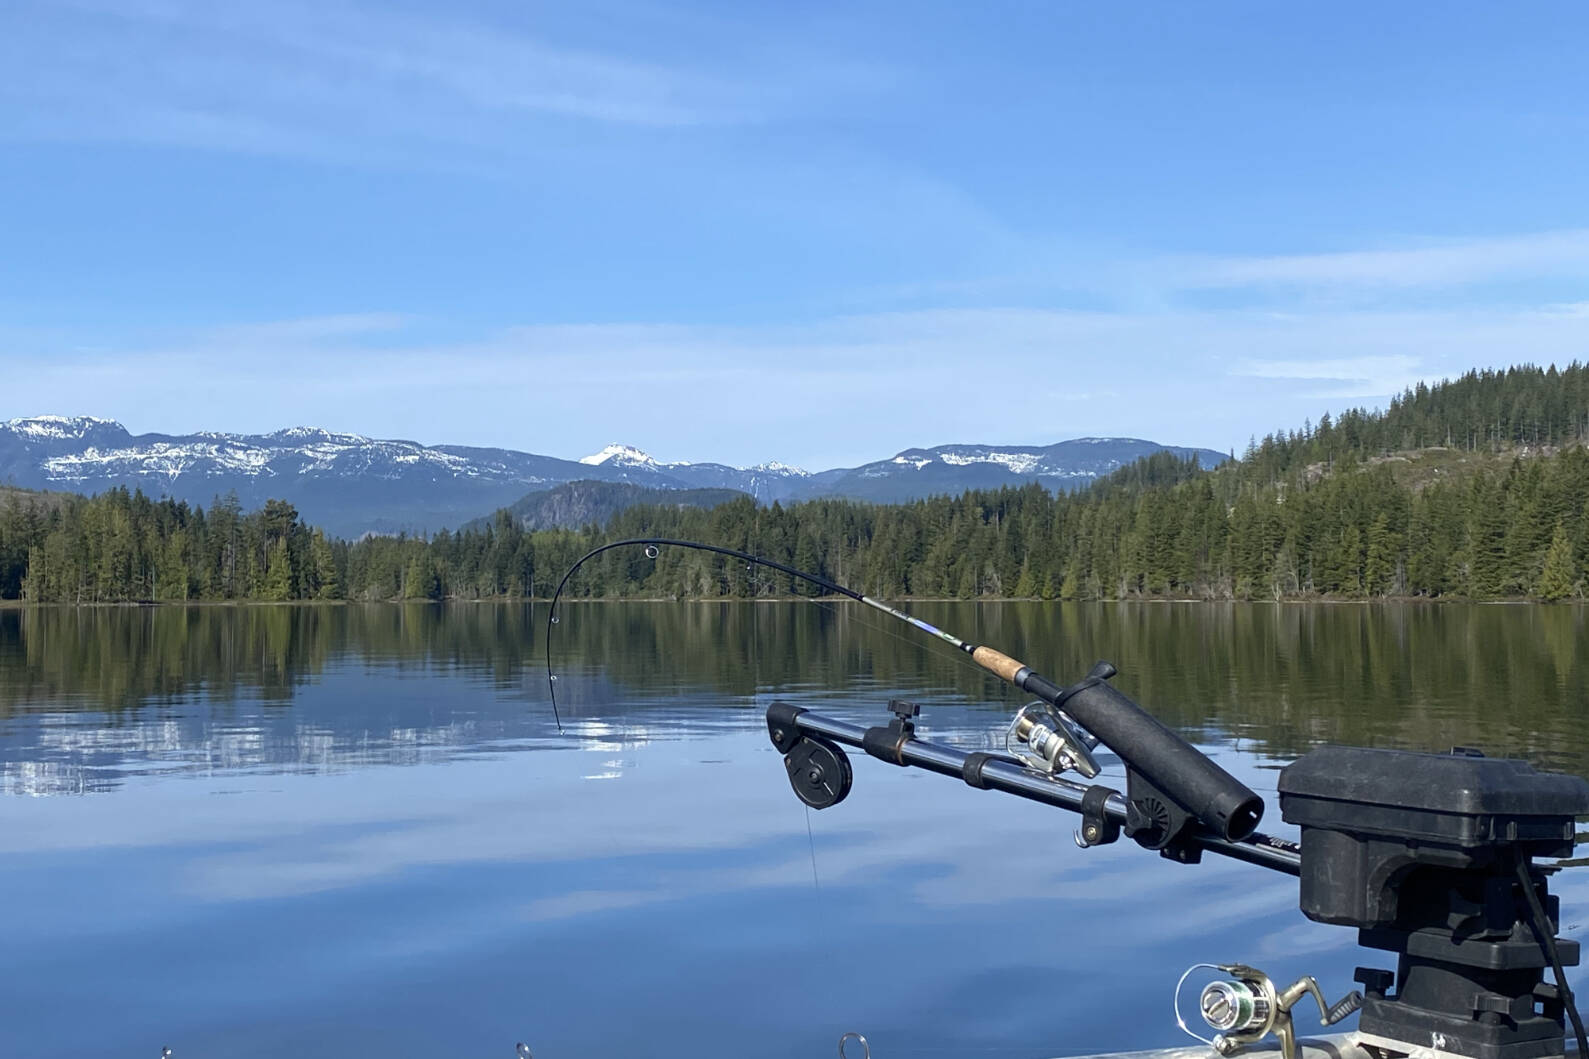 2 kokanee lake fisheries come to Vancouver Island - Nanaimo News